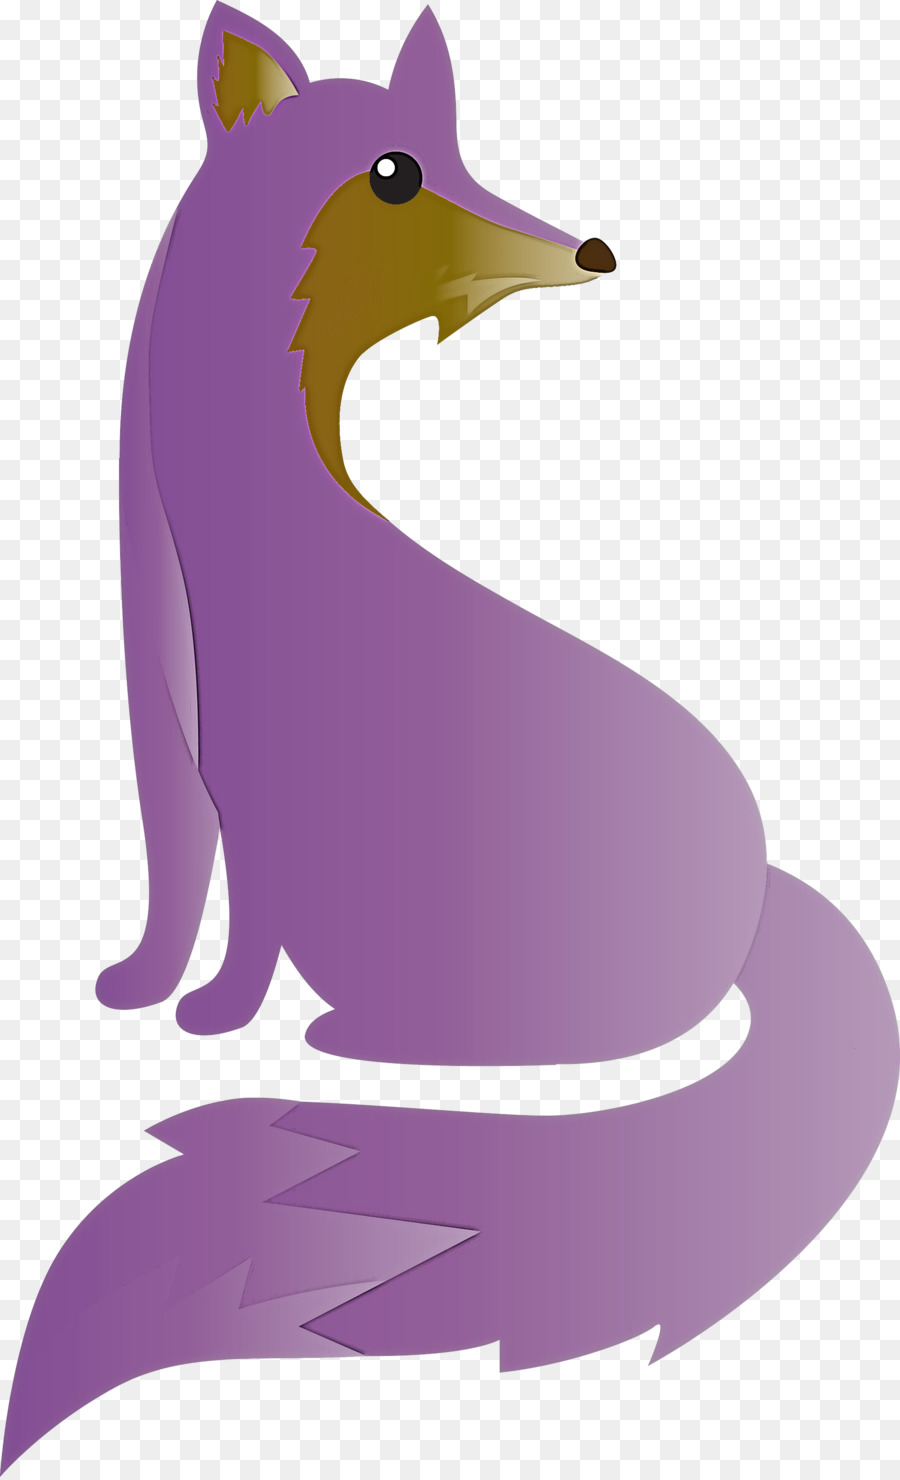 purple cartoon animal figure